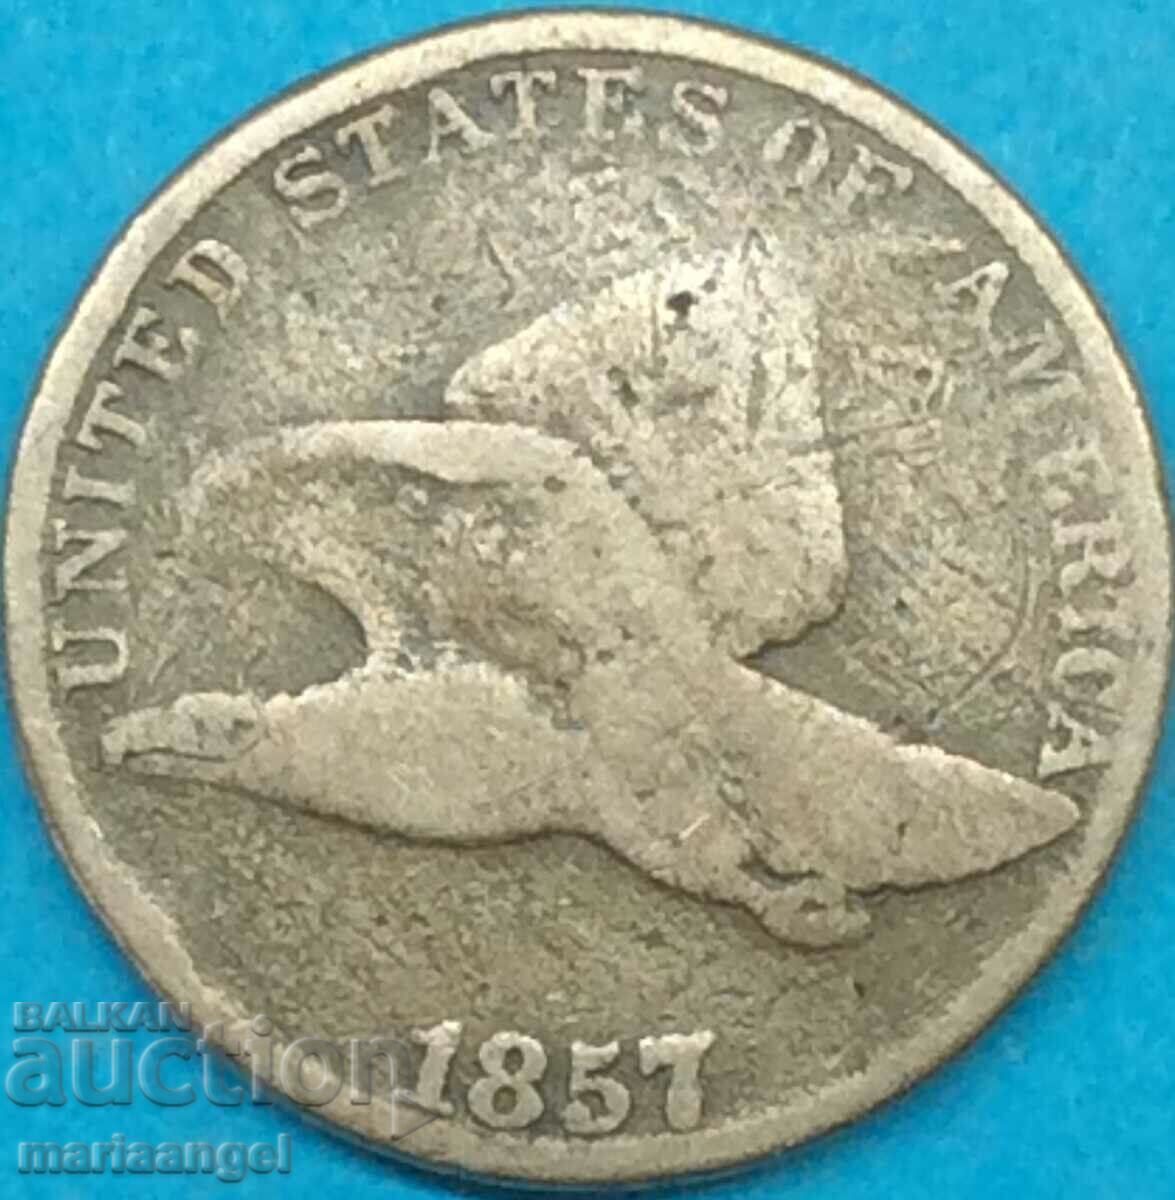 ΗΠΑ 1 cent 1857 «Flying Eagle» χαλκός